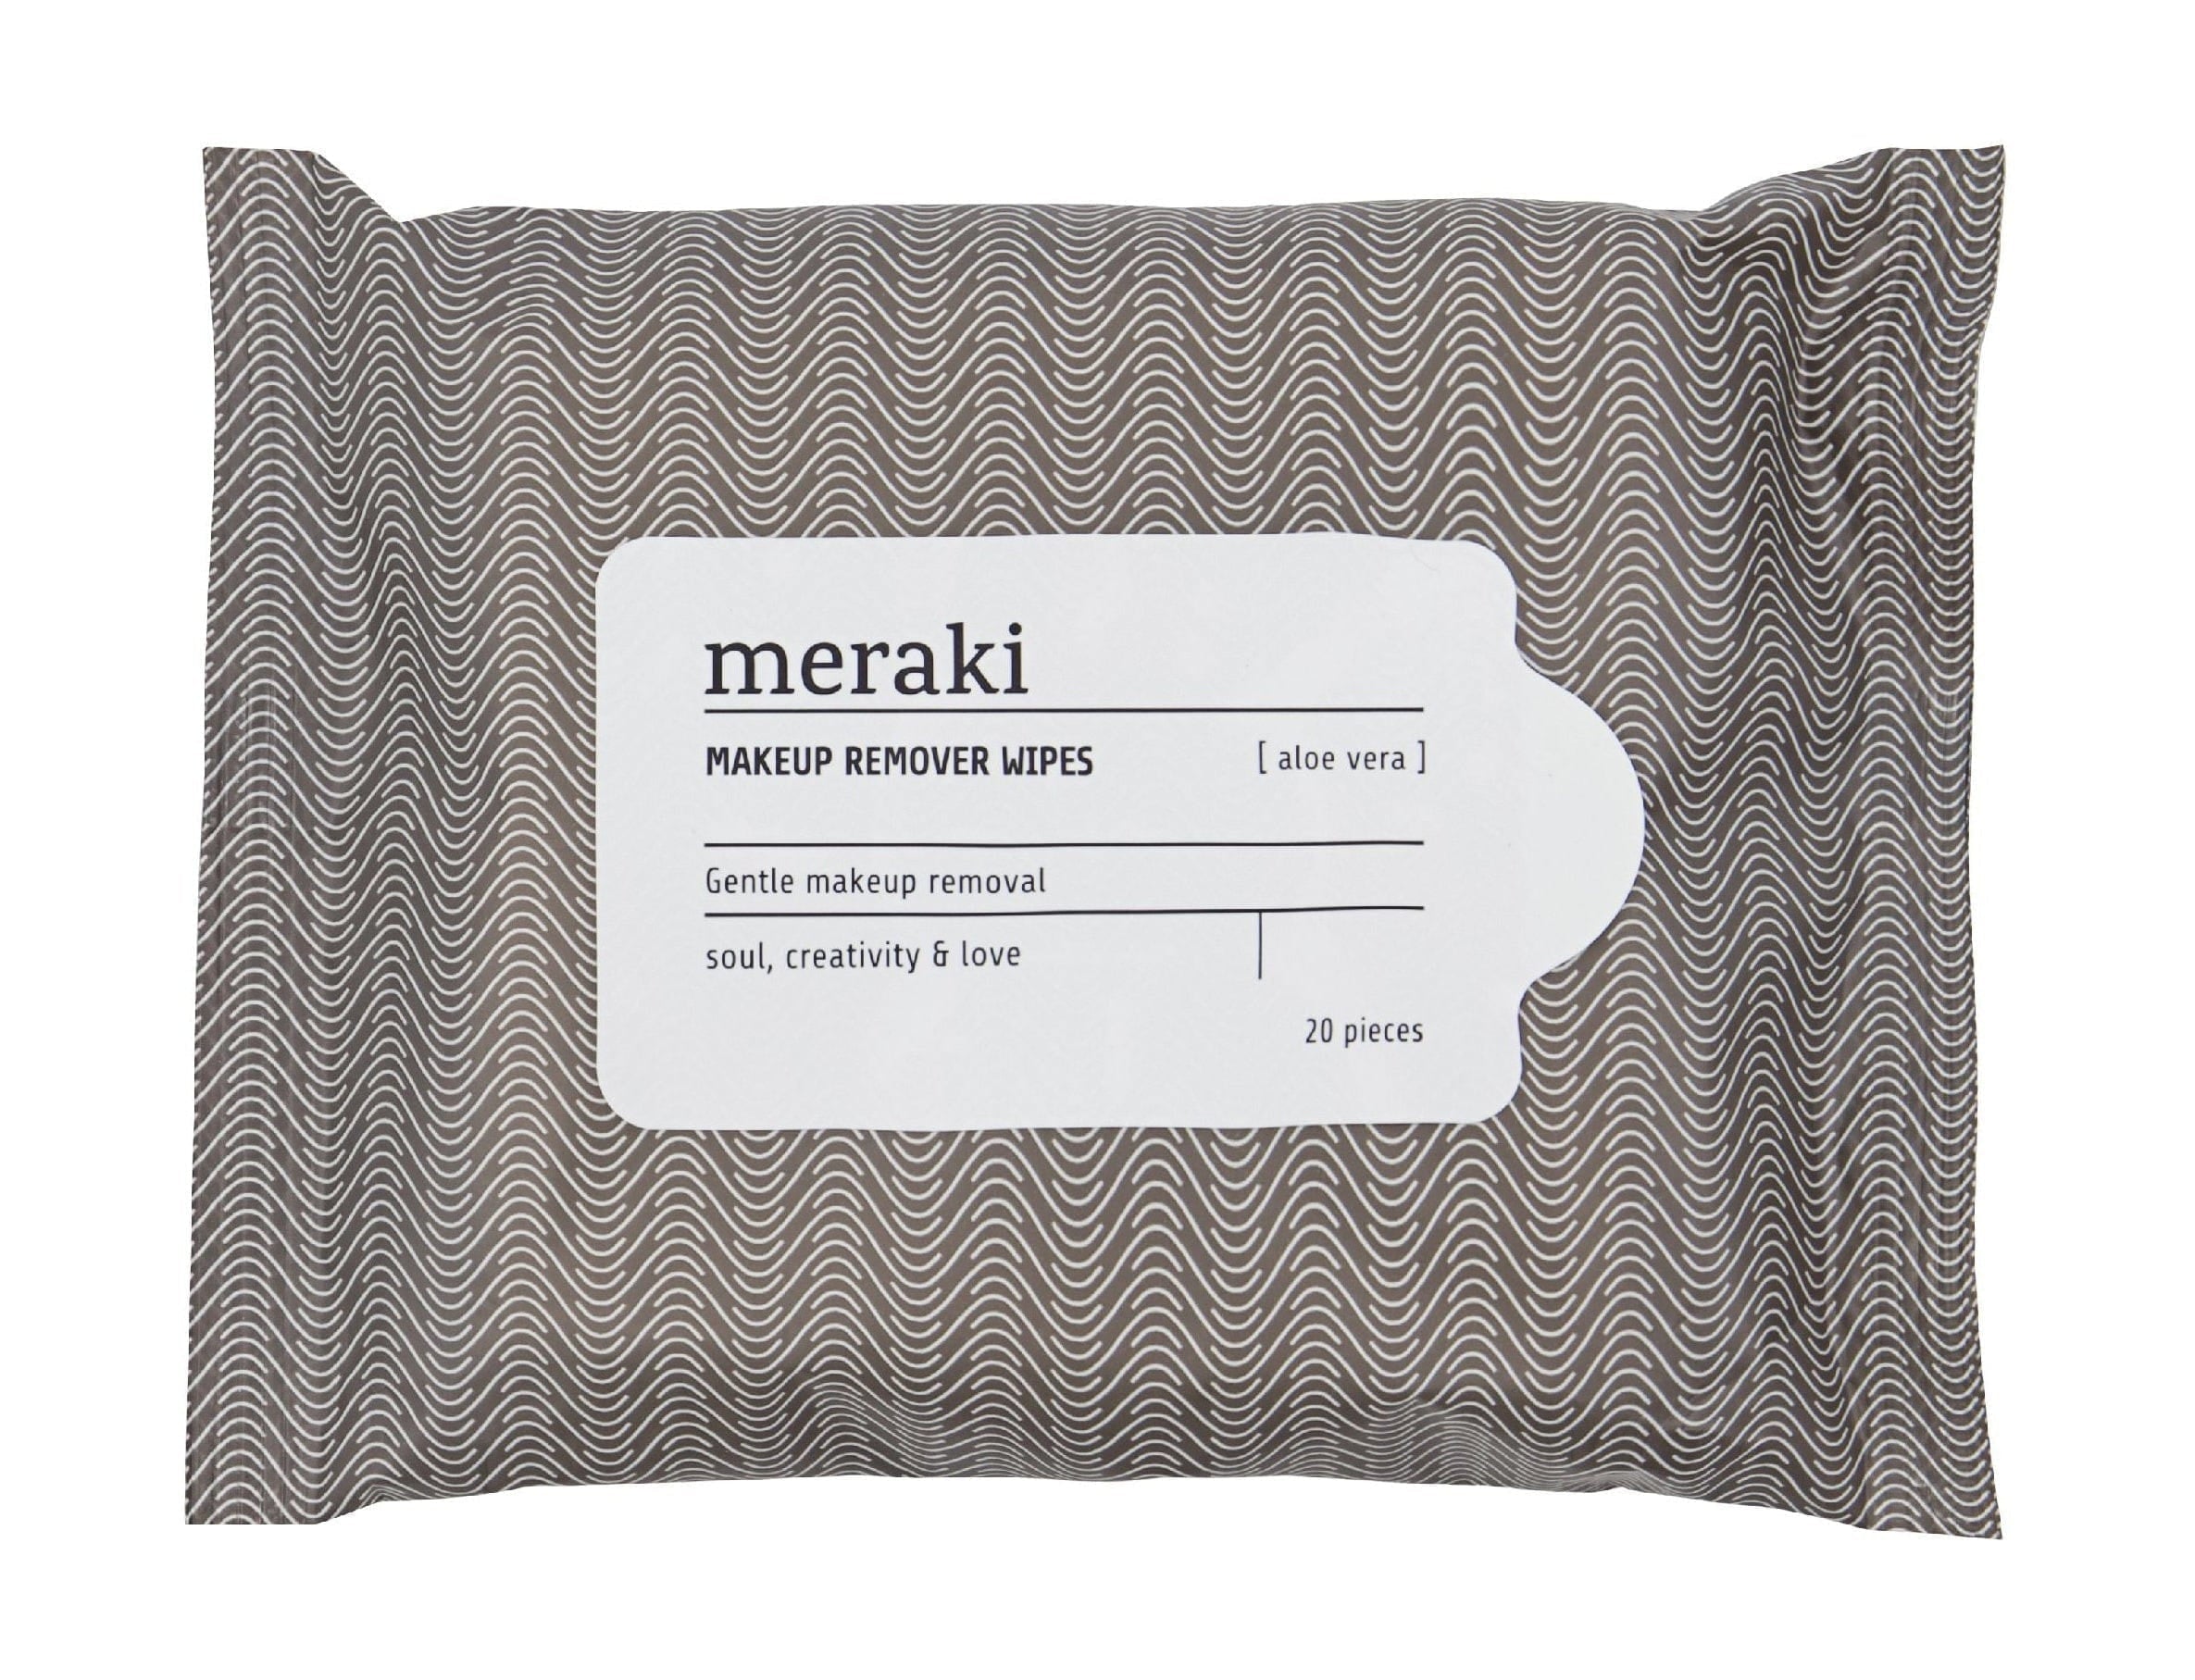 Meraki Make-up-Entferner-Tücher Aloe Vera 20 Stück, warmes Grau/Weiß